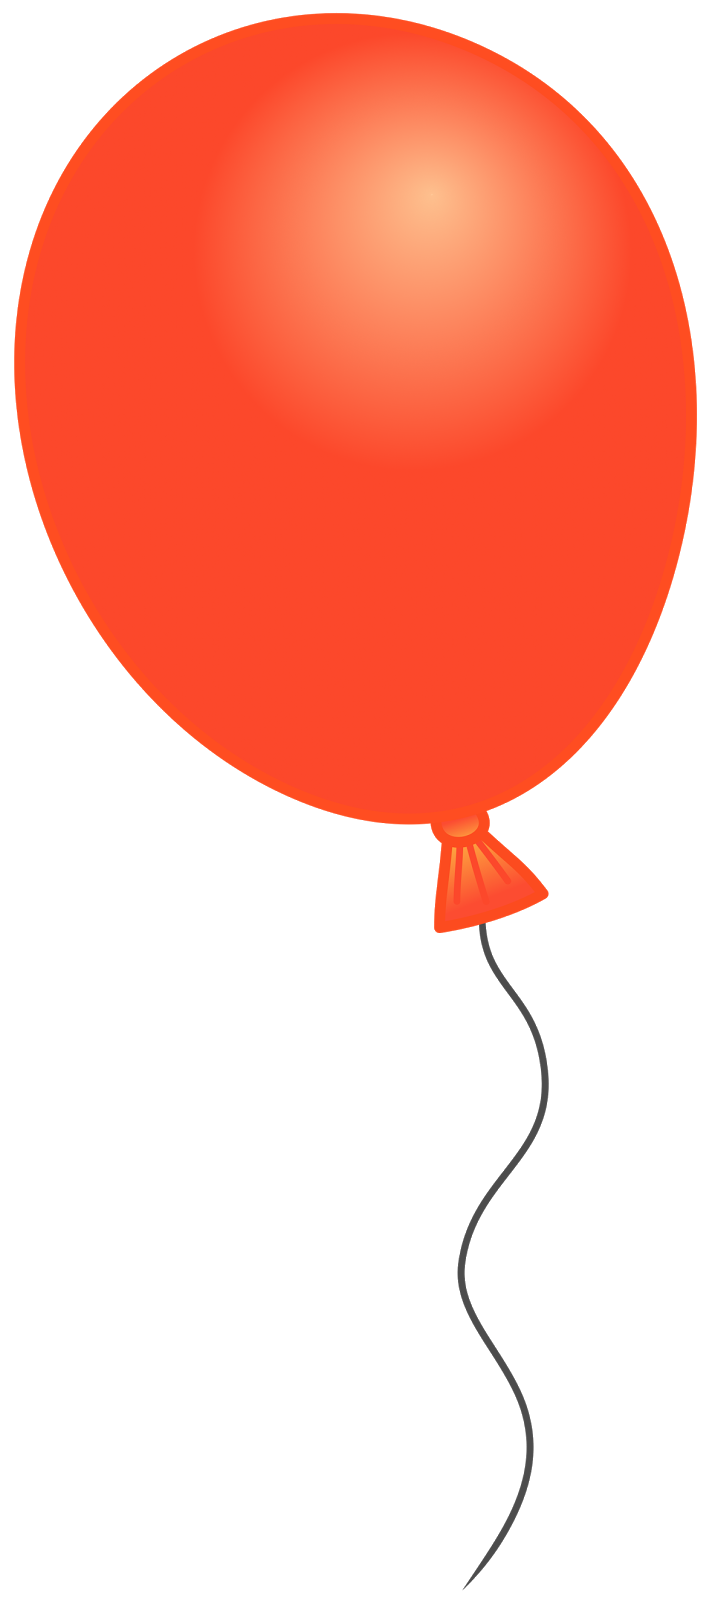 Fond Transparent de limage de PNG de ballon unique